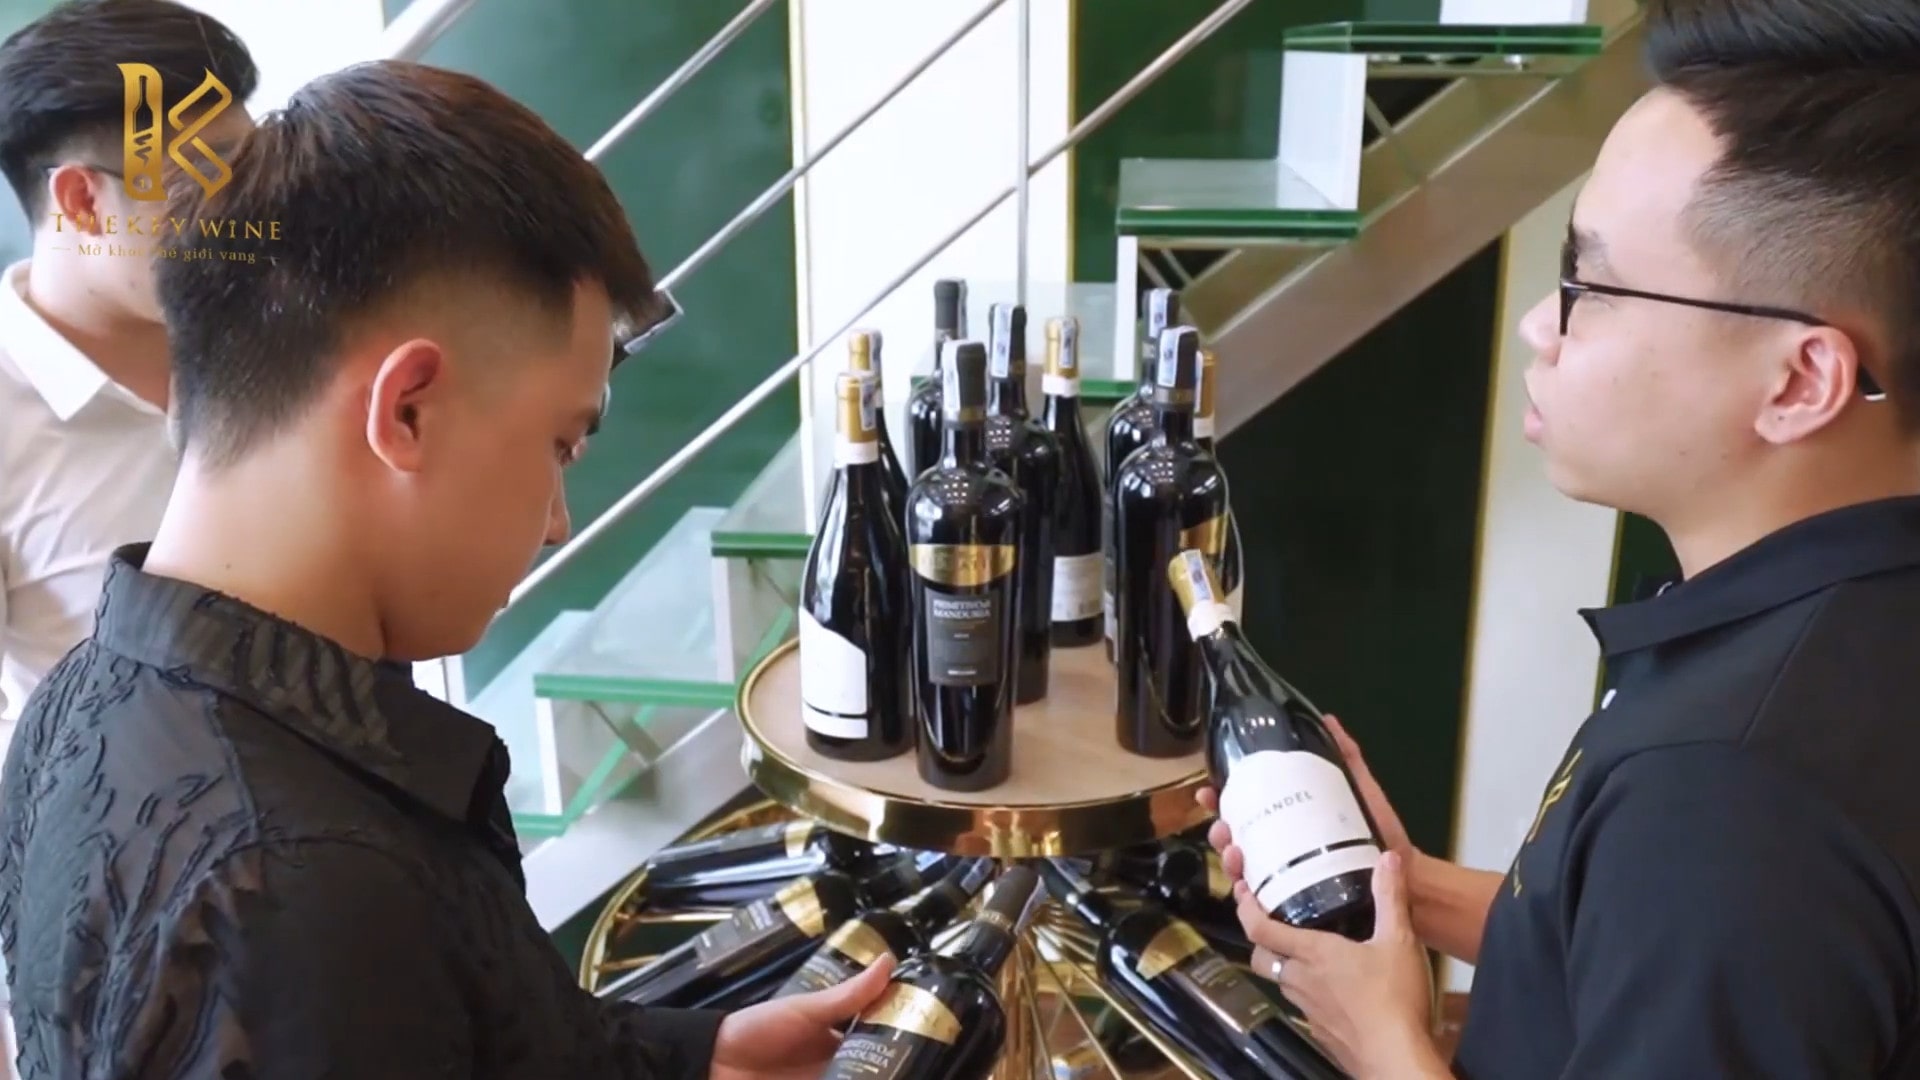 TheKey Wine - Địa chỉ mua rượu vang uy tín và tận tâm "SỐ 1" trên thị trường 2